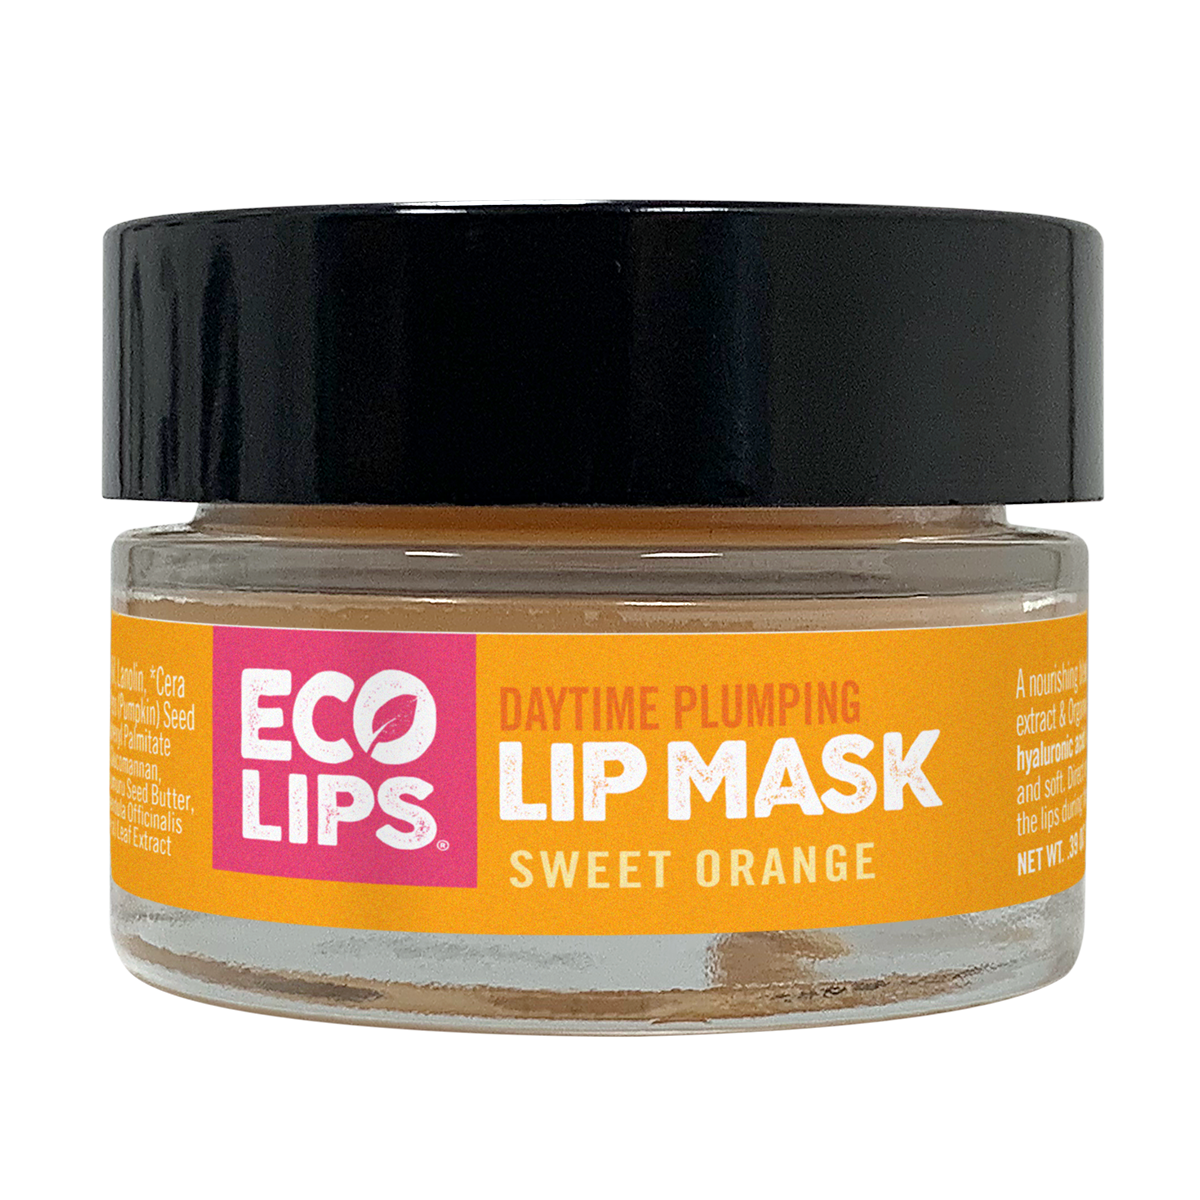 Plumping Daytime Lip Mask, 0.39 oz.